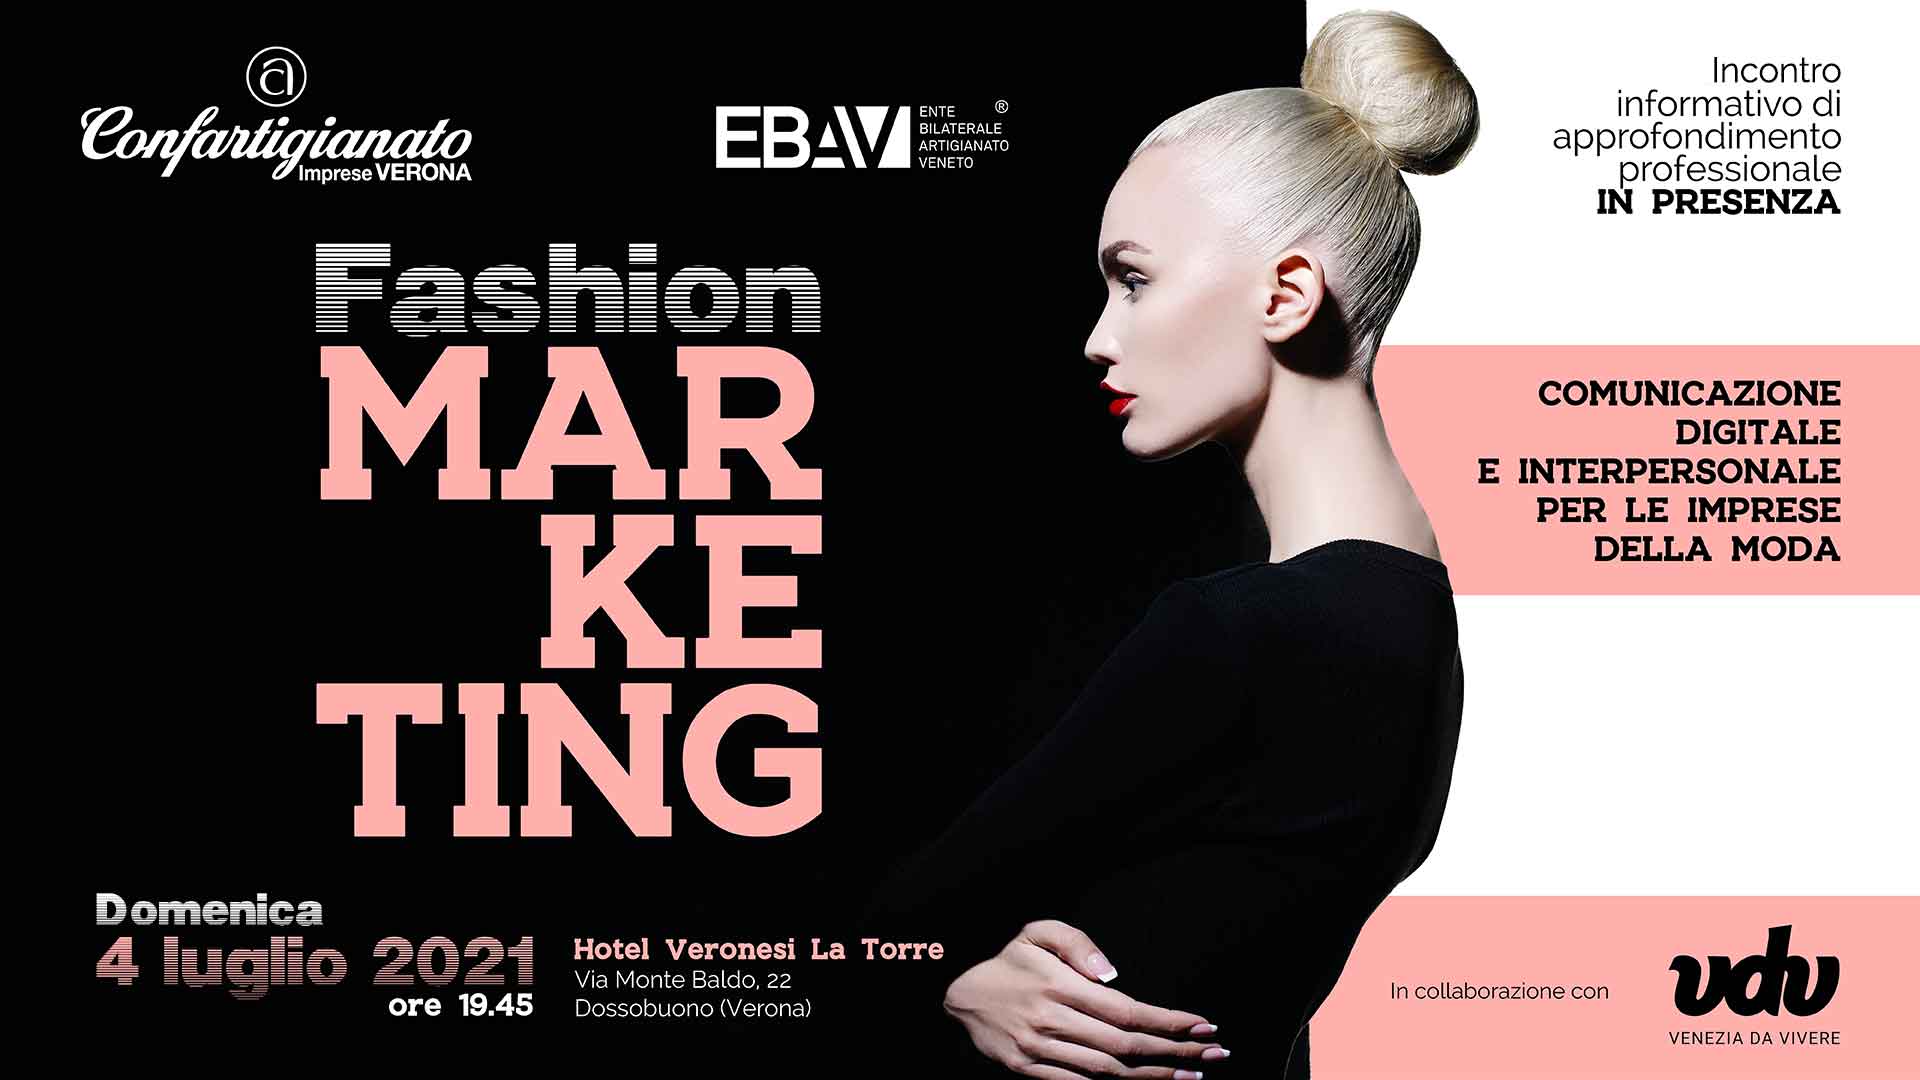 MODA – Domenica 4 luglio, l'evento 'Fashion Marketing - Comunicazione digitale e interpersonale per le imprese della Moda". Iscriviti subito